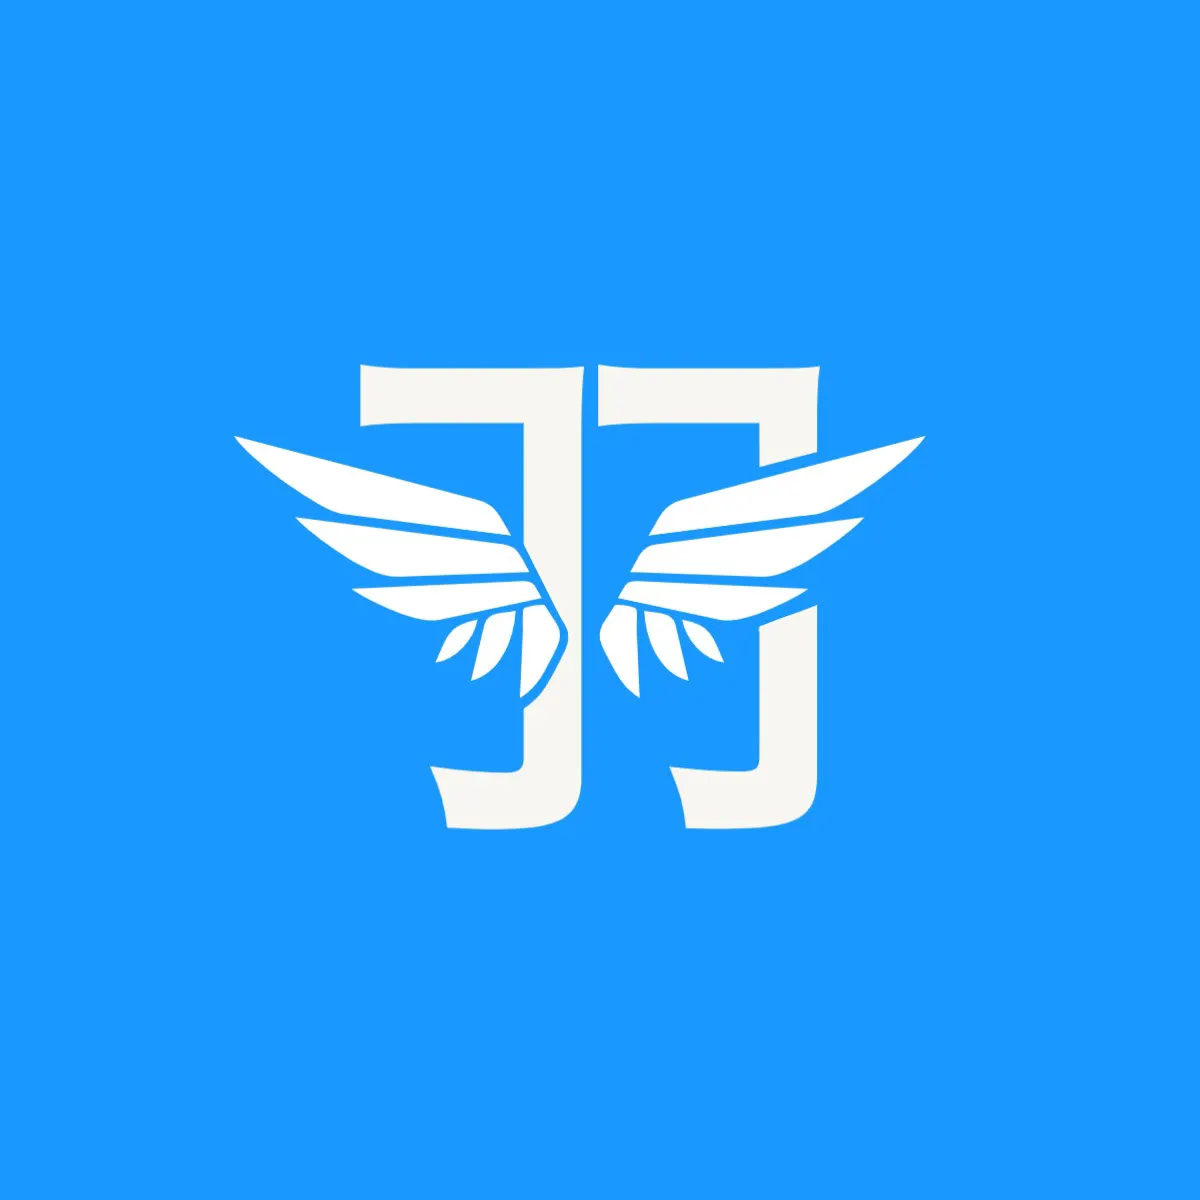 Wing kanji logo